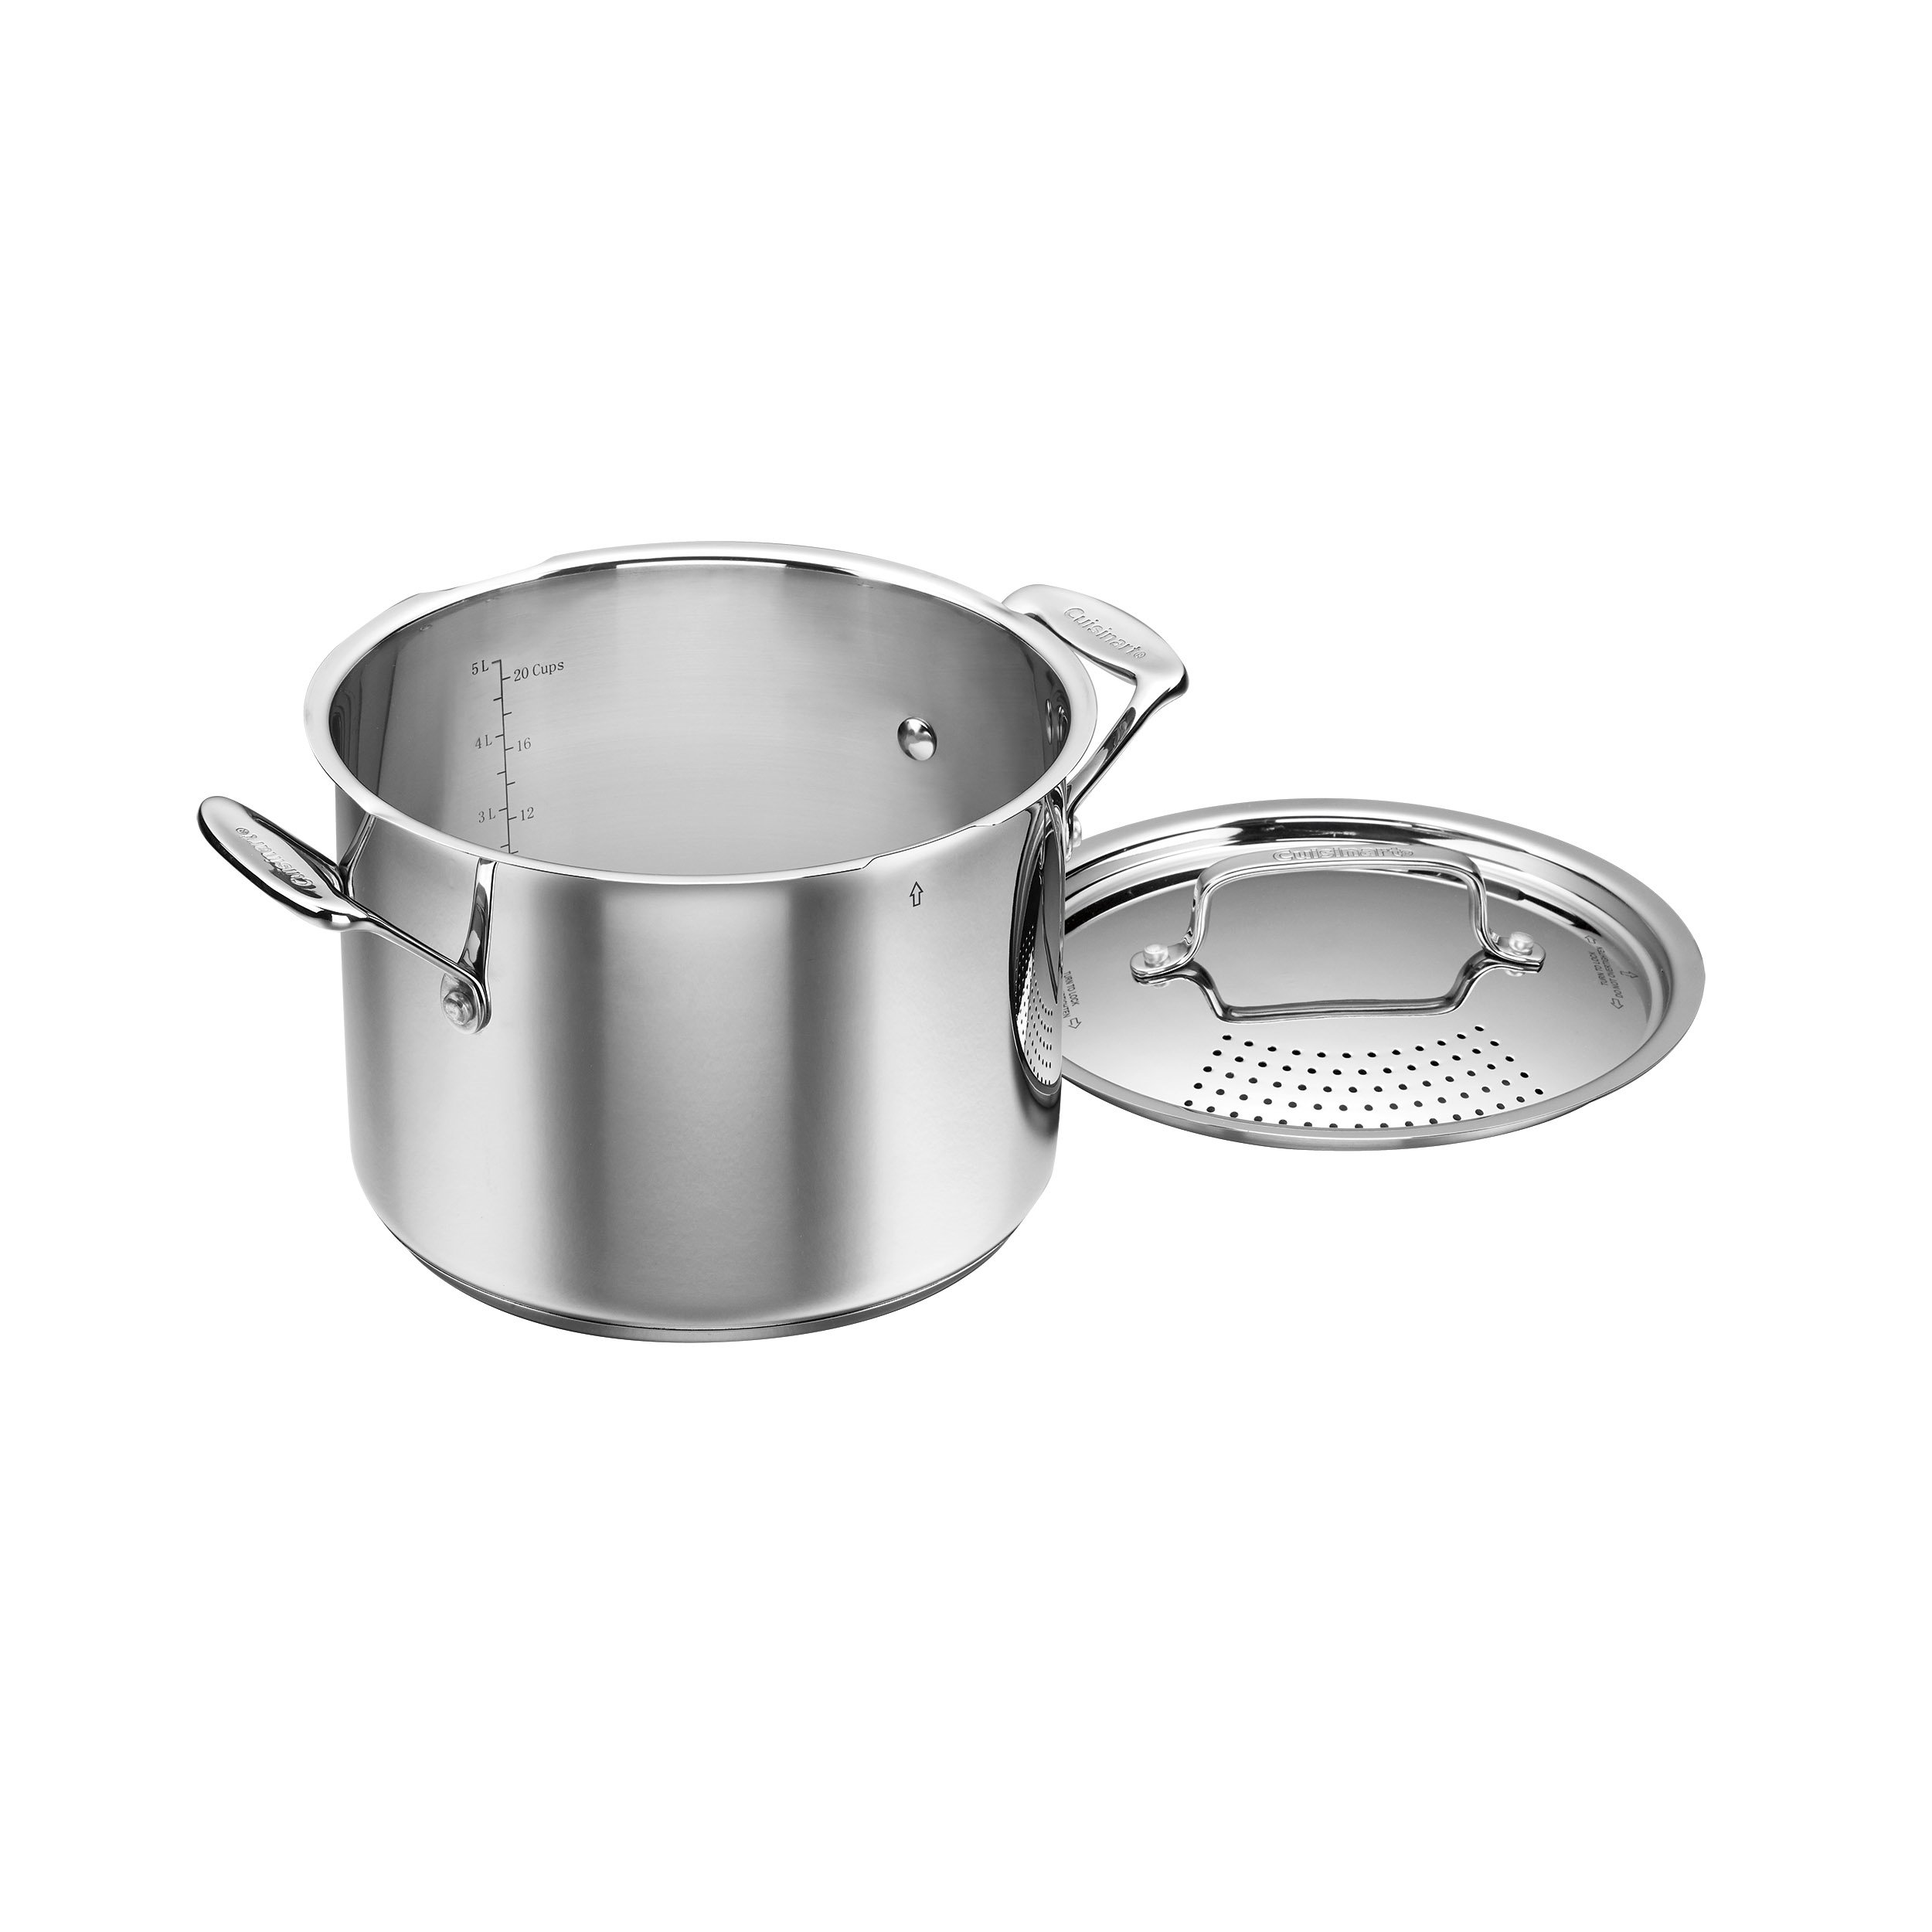 Cuisinart Classic Stainless Steel Cookware 2 Quart Saucepan